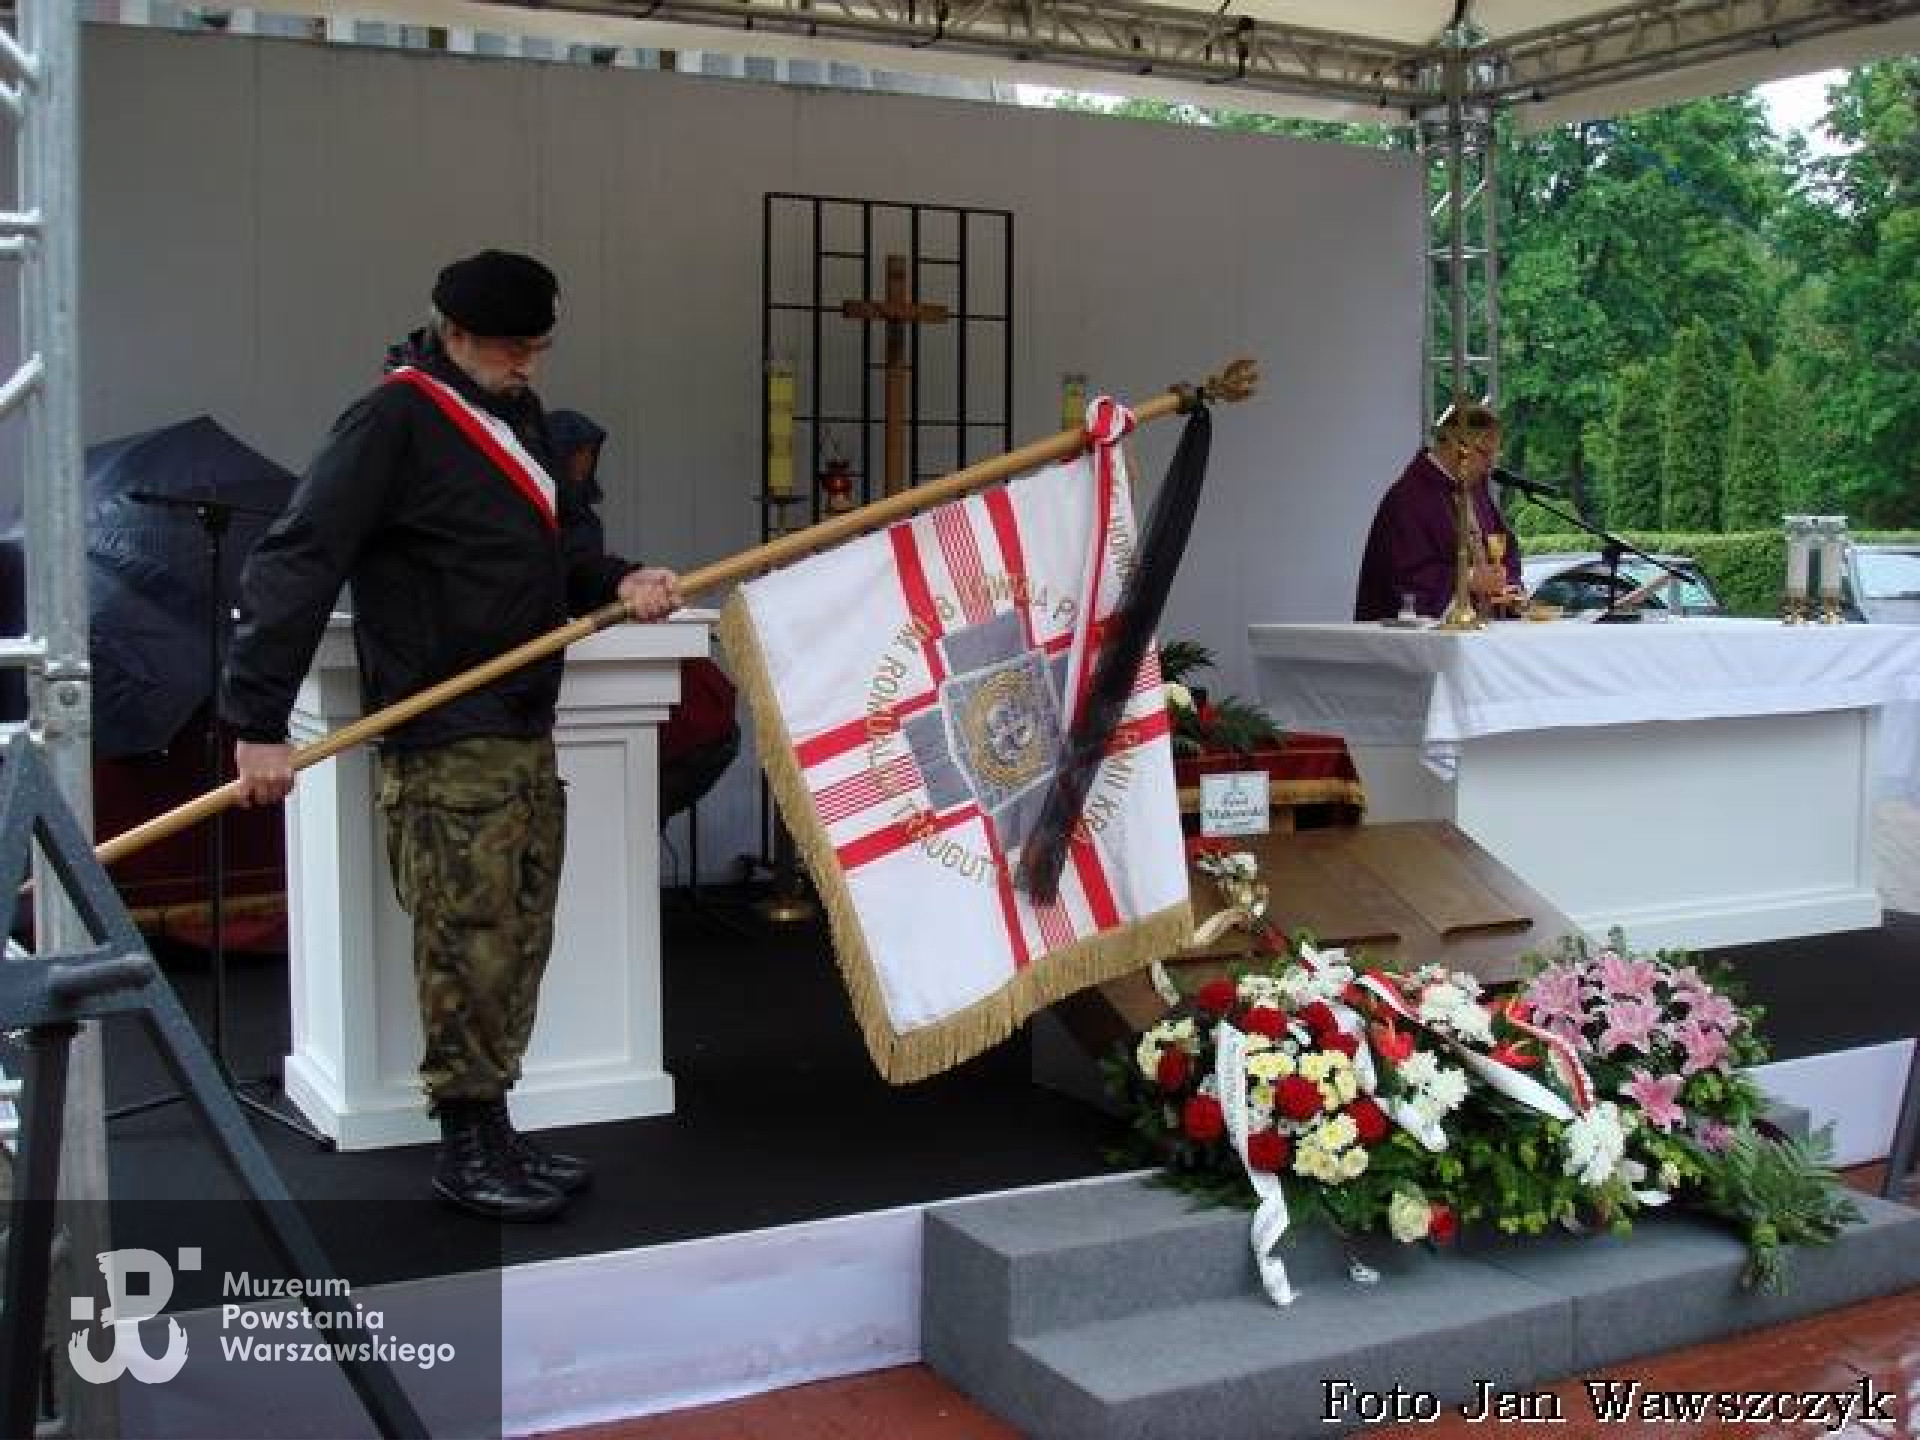 Uroczystości pogrzebowe 16 maja 2014. Fot. dzięki uprzejmości Jana Wawszczyka.